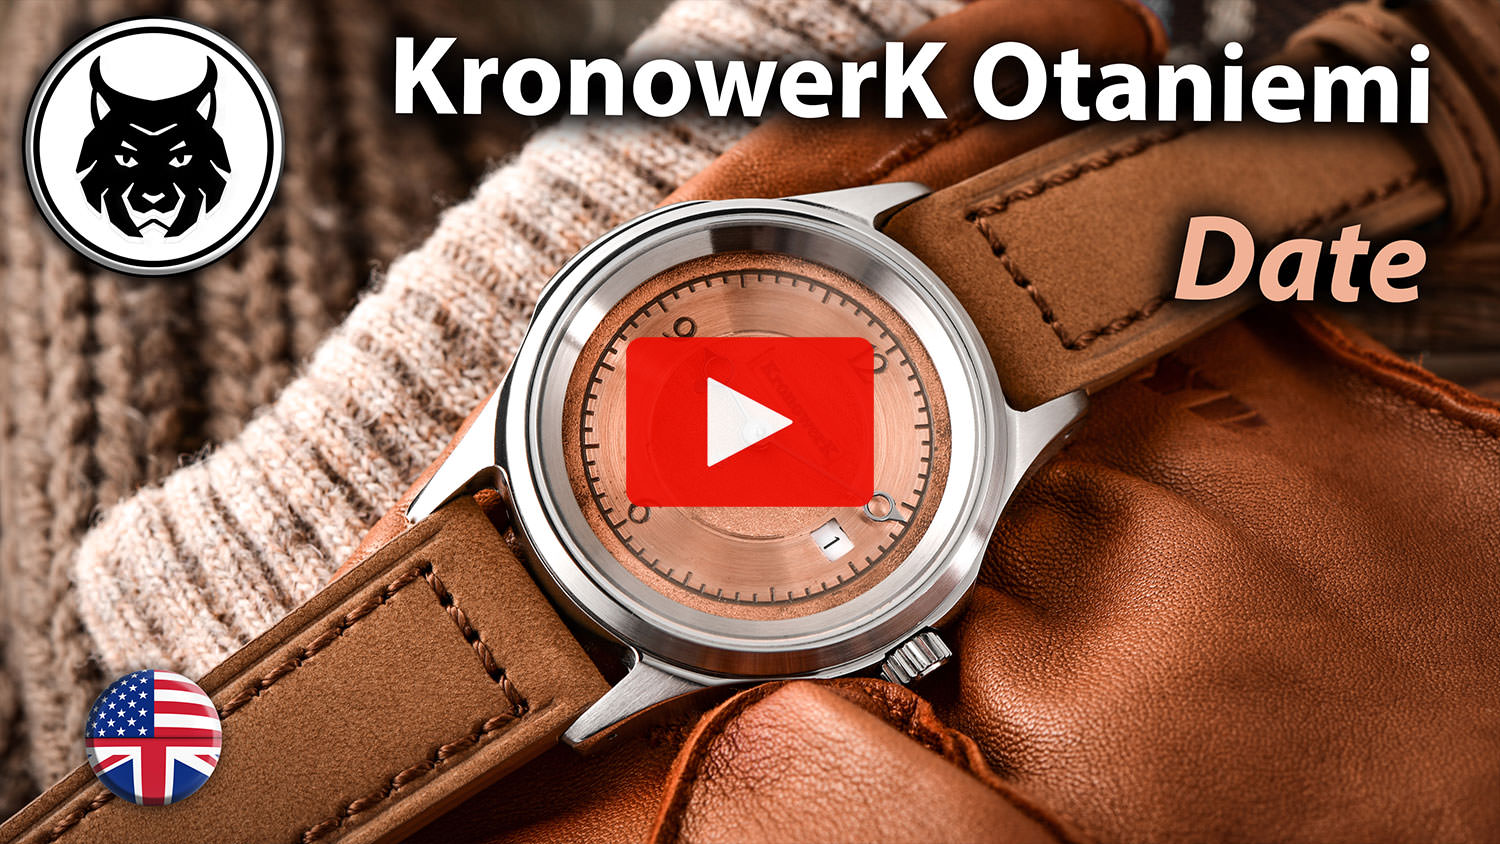 KronowerK Otaniemi Date bei Youtube! On the wrist, Details, Caseback, different straps, ...